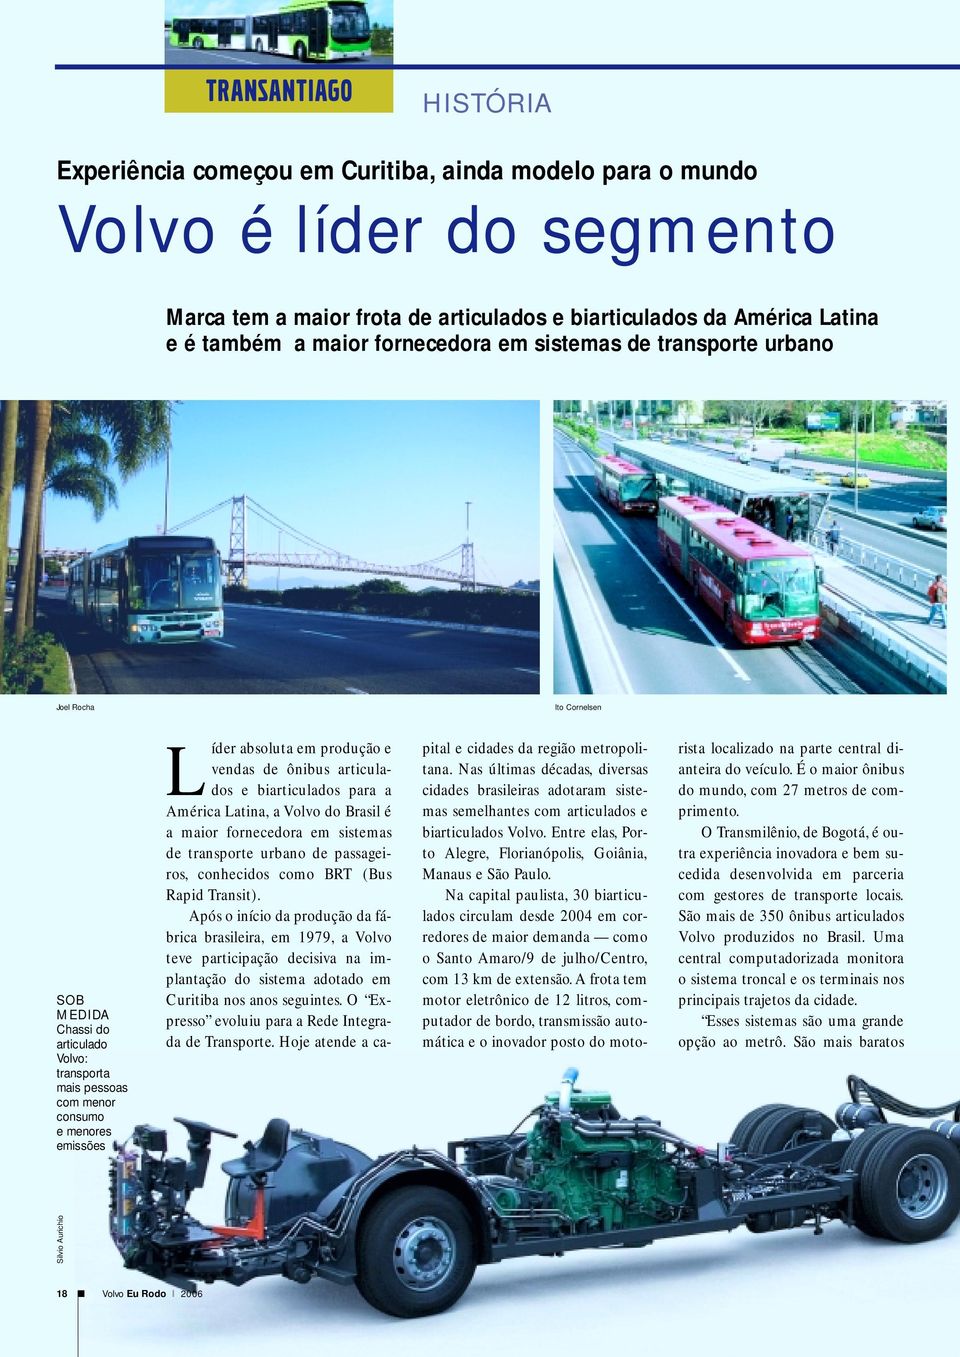 metropolitana. Nas últimas décadas, diversas cidades brasileiras adotaram sistemas semelhantes com articulados e biarticulados Volvo.